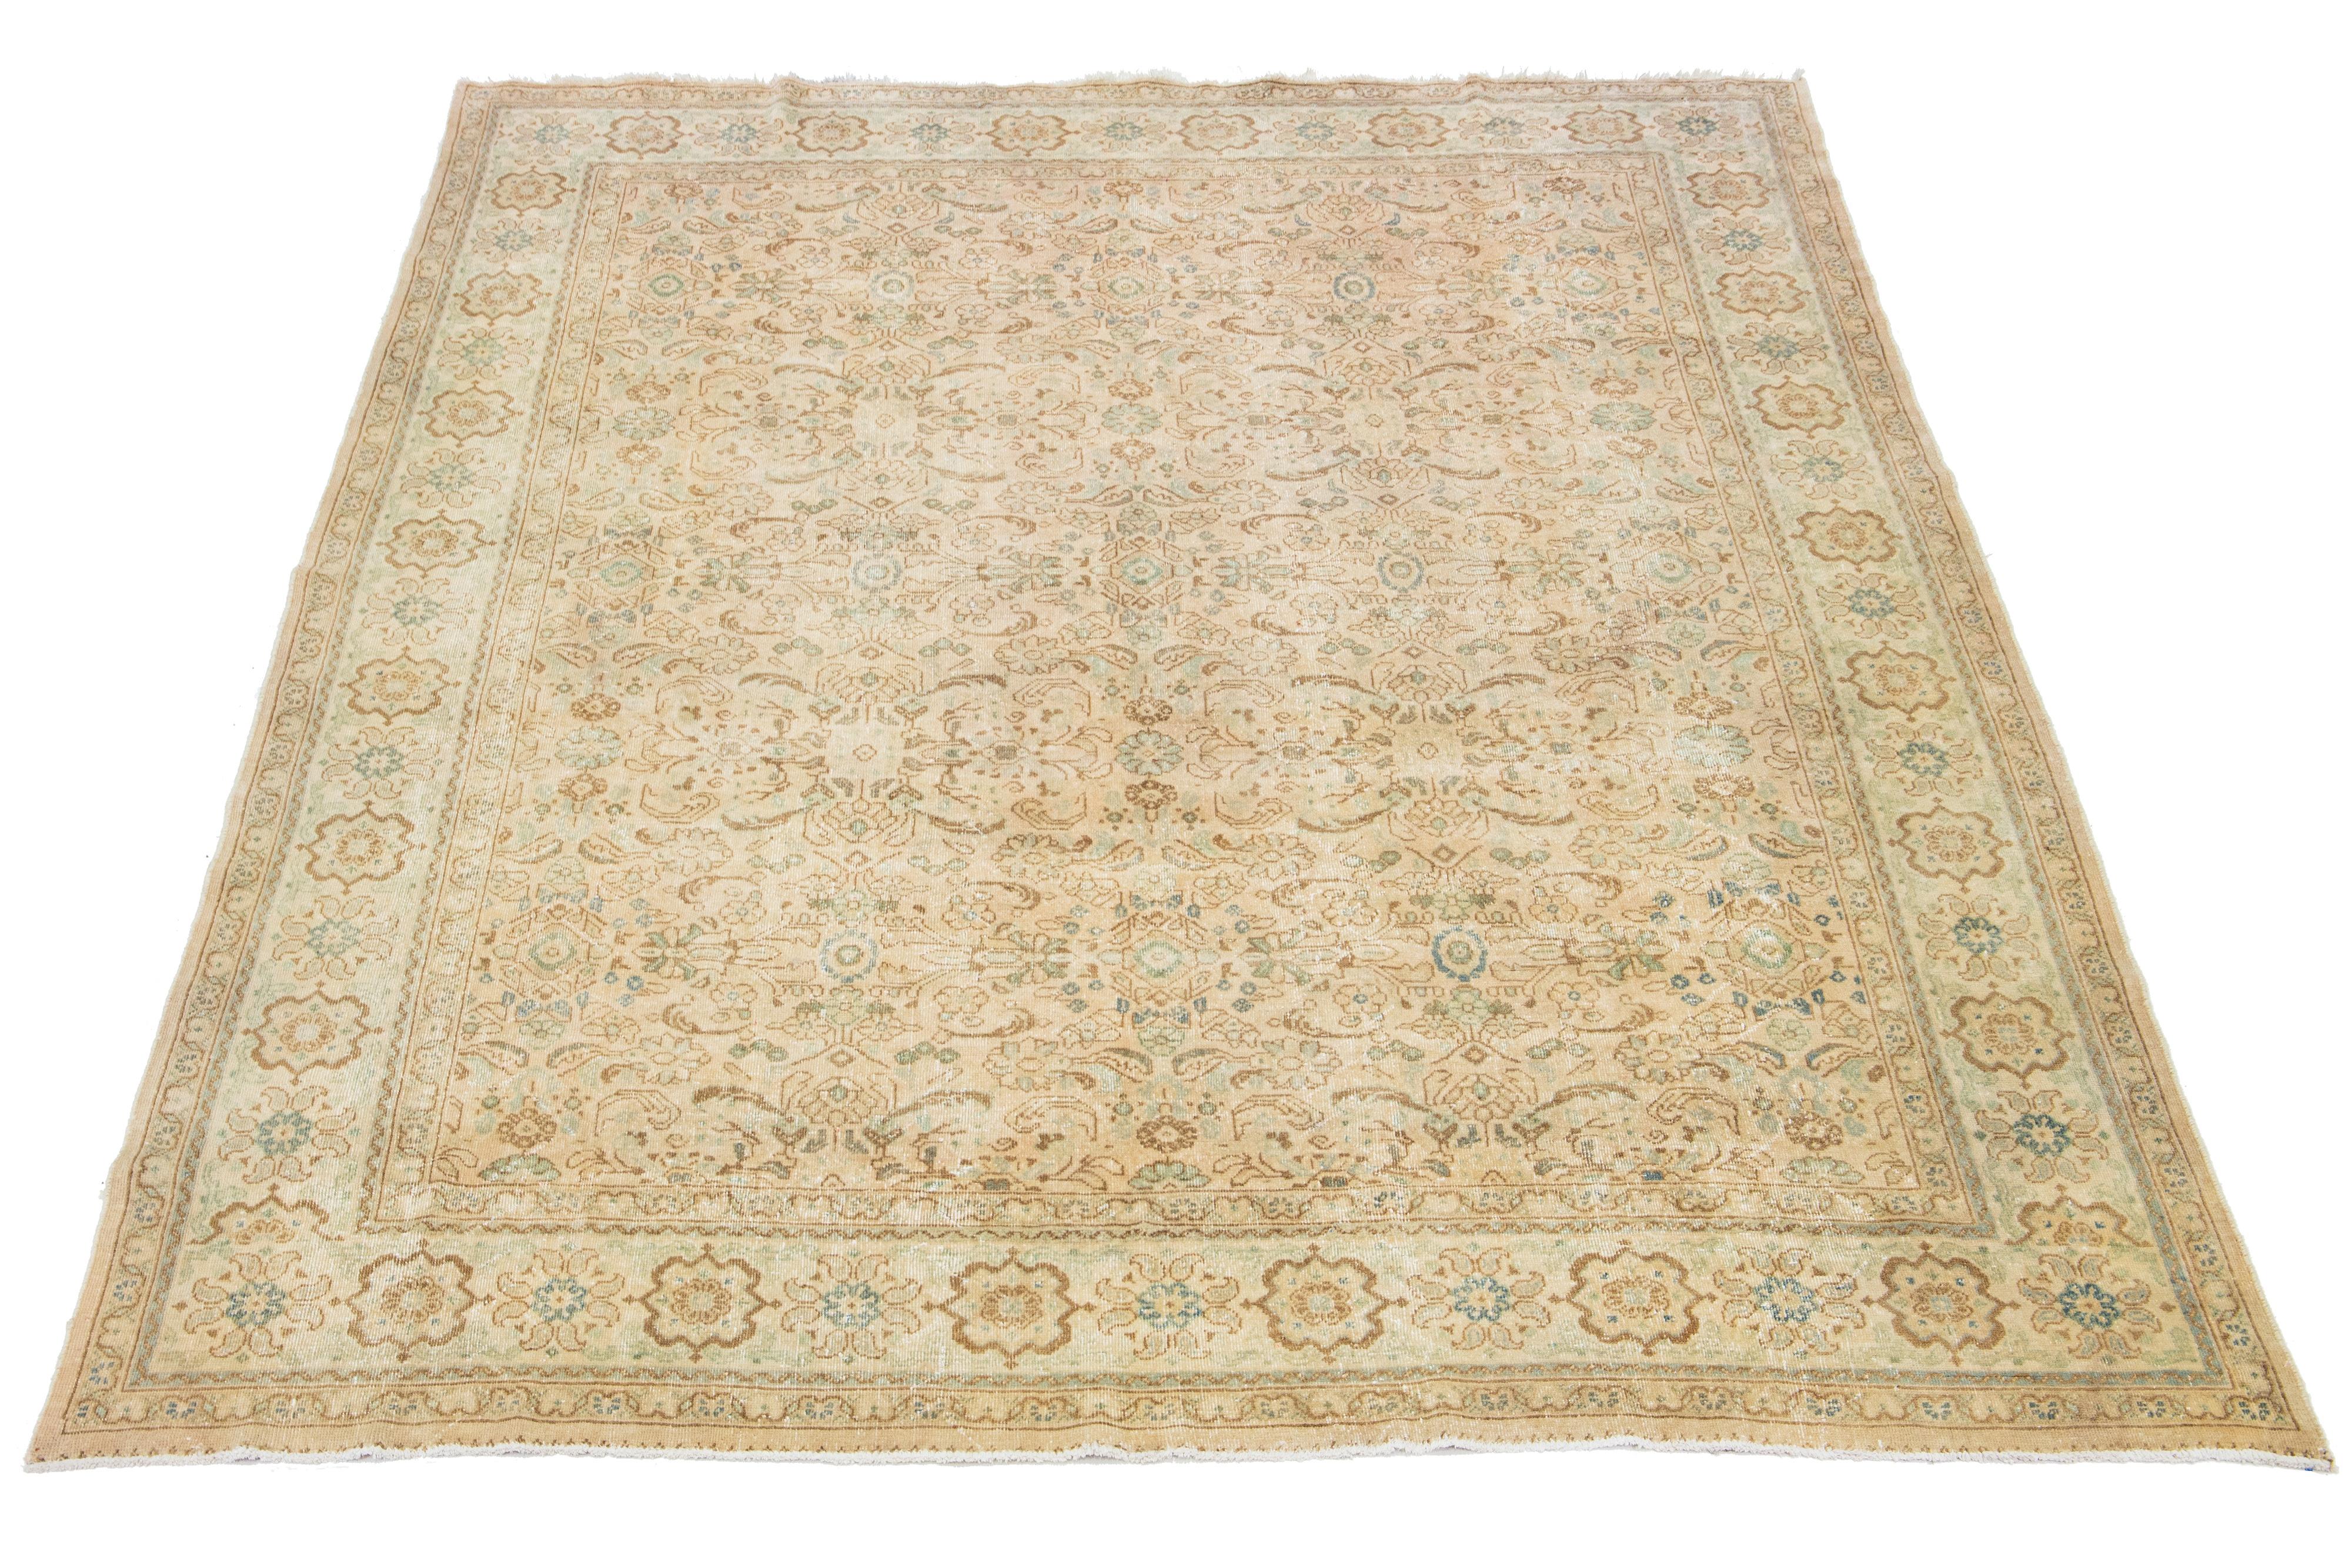 Dieser handgefertigte persische Mahal-Wollteppich zeigt ein traditionelles florales Muster. Der Kontrast zwischen dem beigen Hintergrund hebt das braune und blaue Blumenmuster hervor.

Dieser Teppich misst 10'2